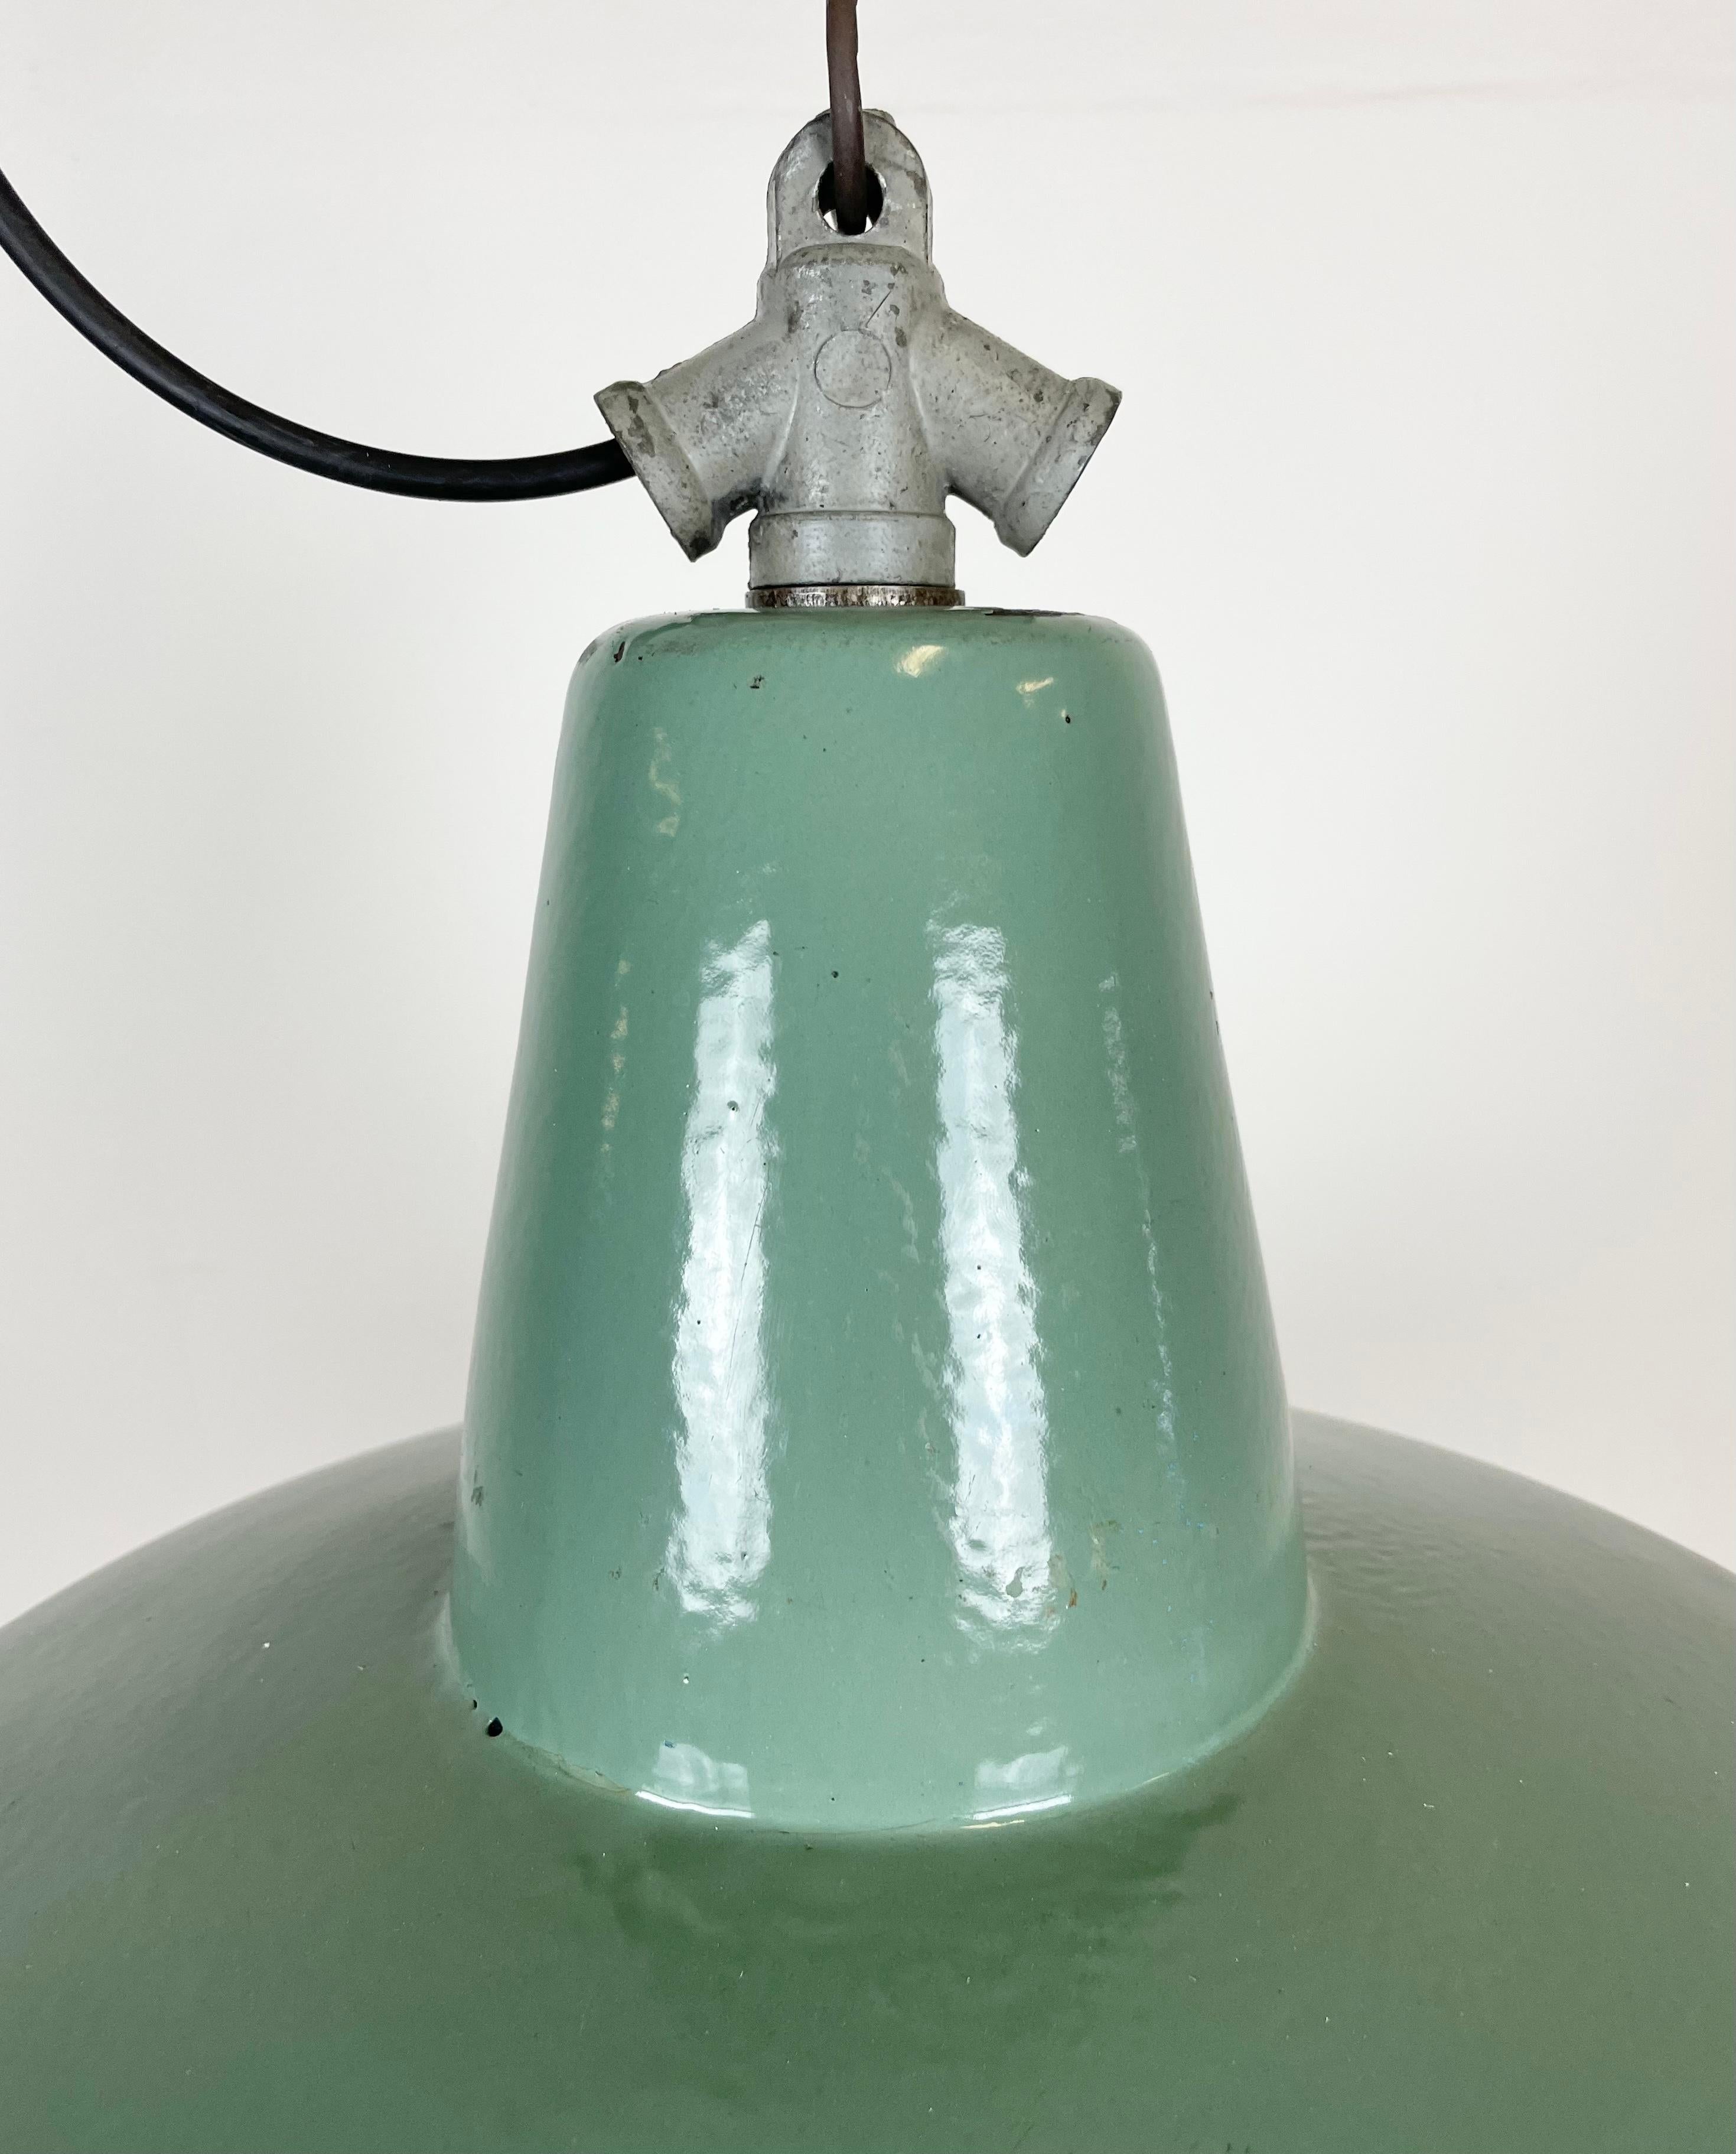 Industrielle Petrol-Emaille-Fabriklampe mit gusseiserner Platte, 1960er Jahre (Polnisch)